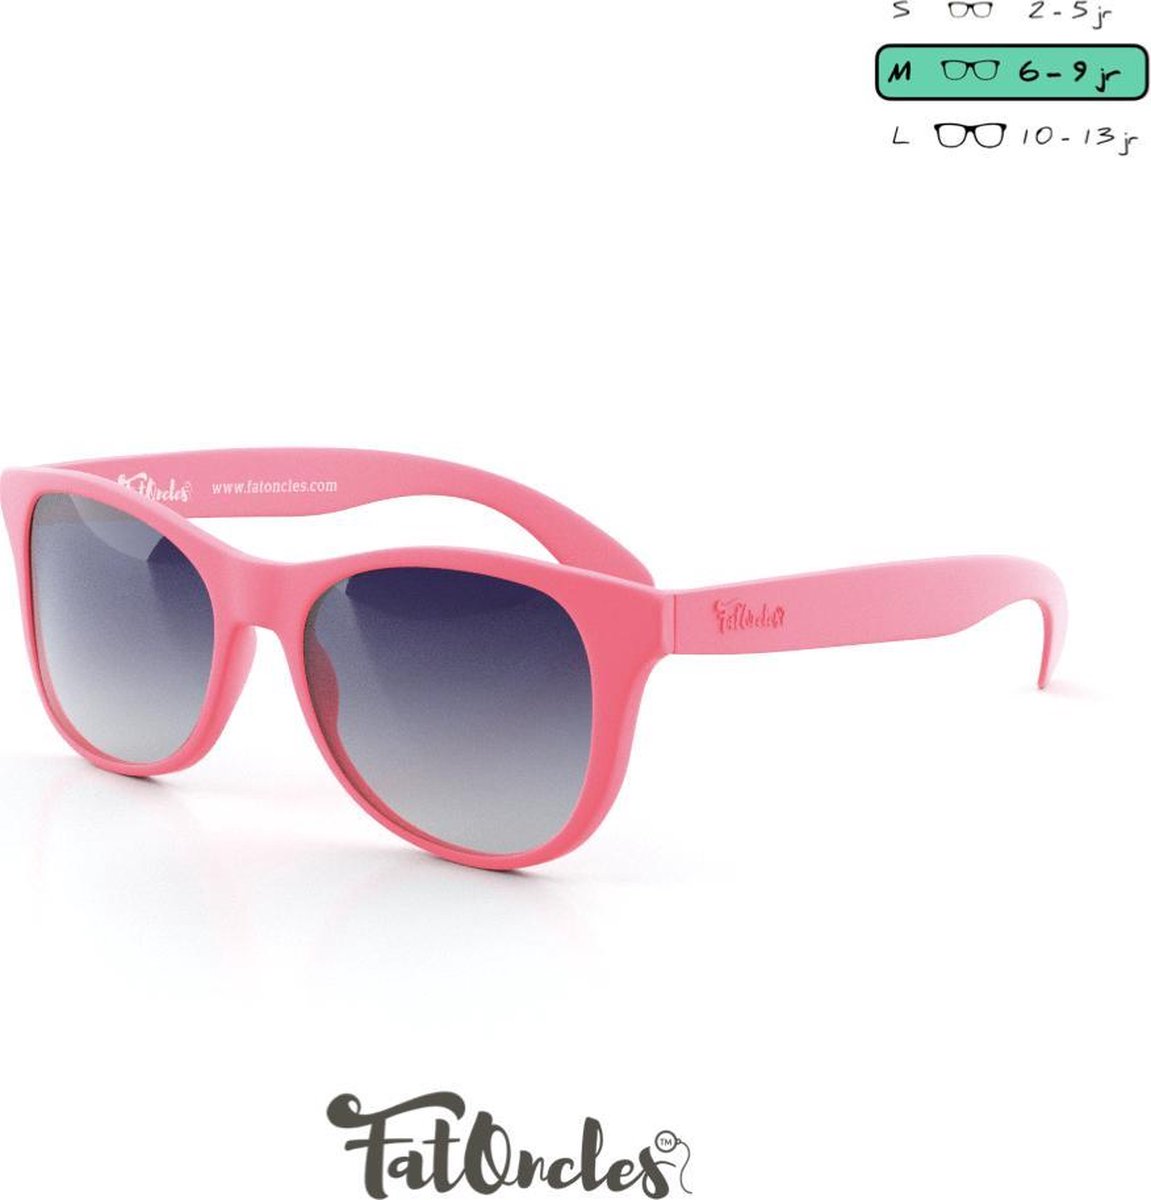 Kinder zonnebril. FatOncles FRANK-medium, roze. Flexibel, ultralicht & veilig. Voor kinderen van 6 t/m 12 jaar.